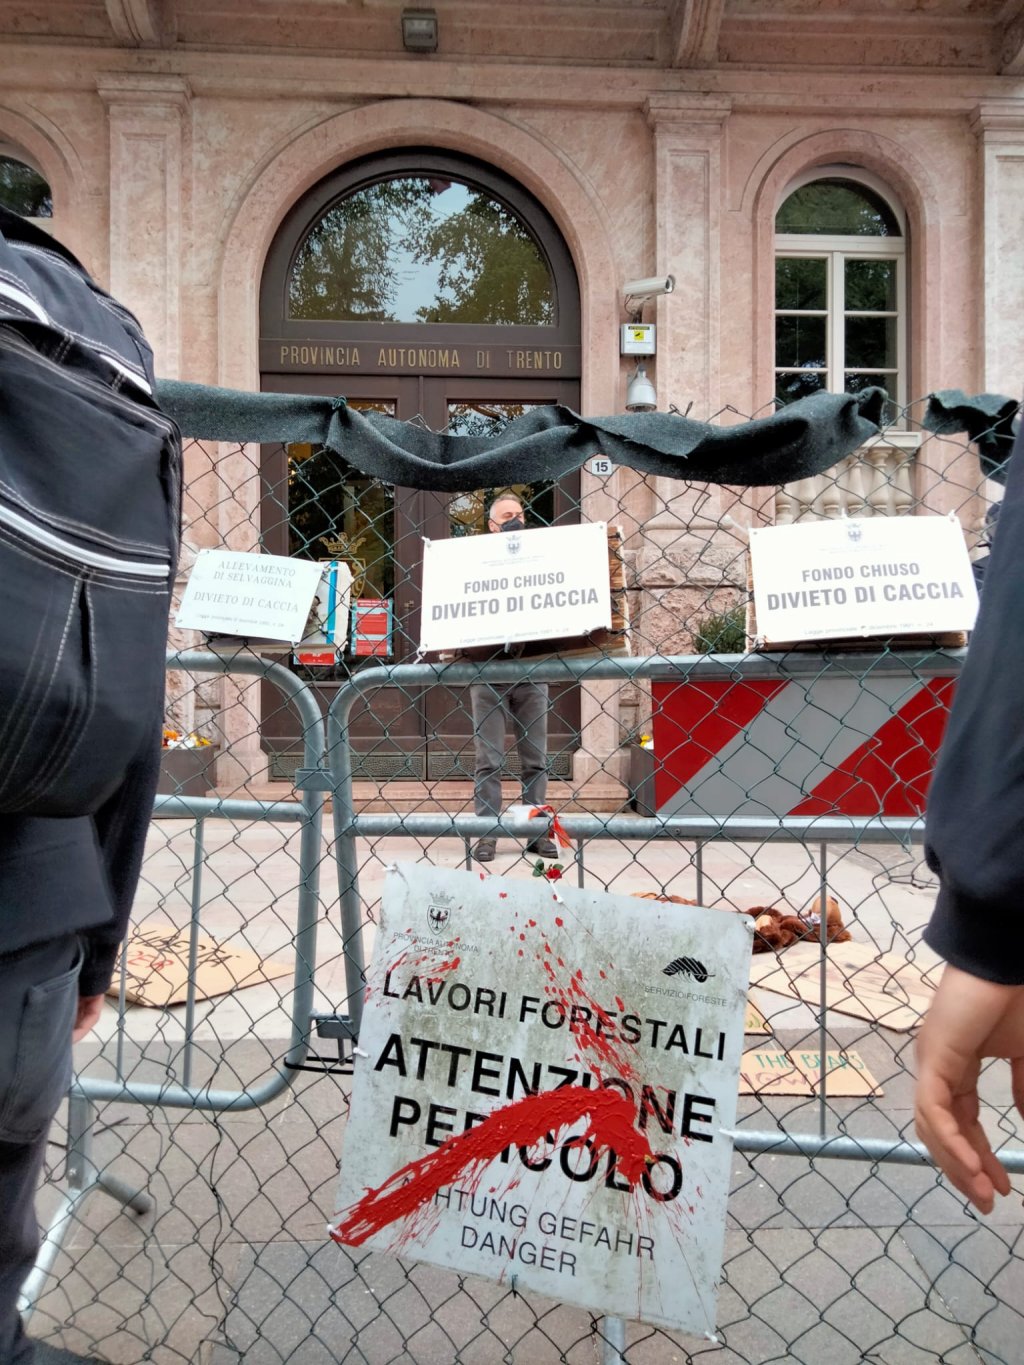 “Smontiamo la gabbia”, al fianco degli orsi: da tutta Italia oggi a Trento per la seconda manifestazione nazionale della campagna #StopCasteller